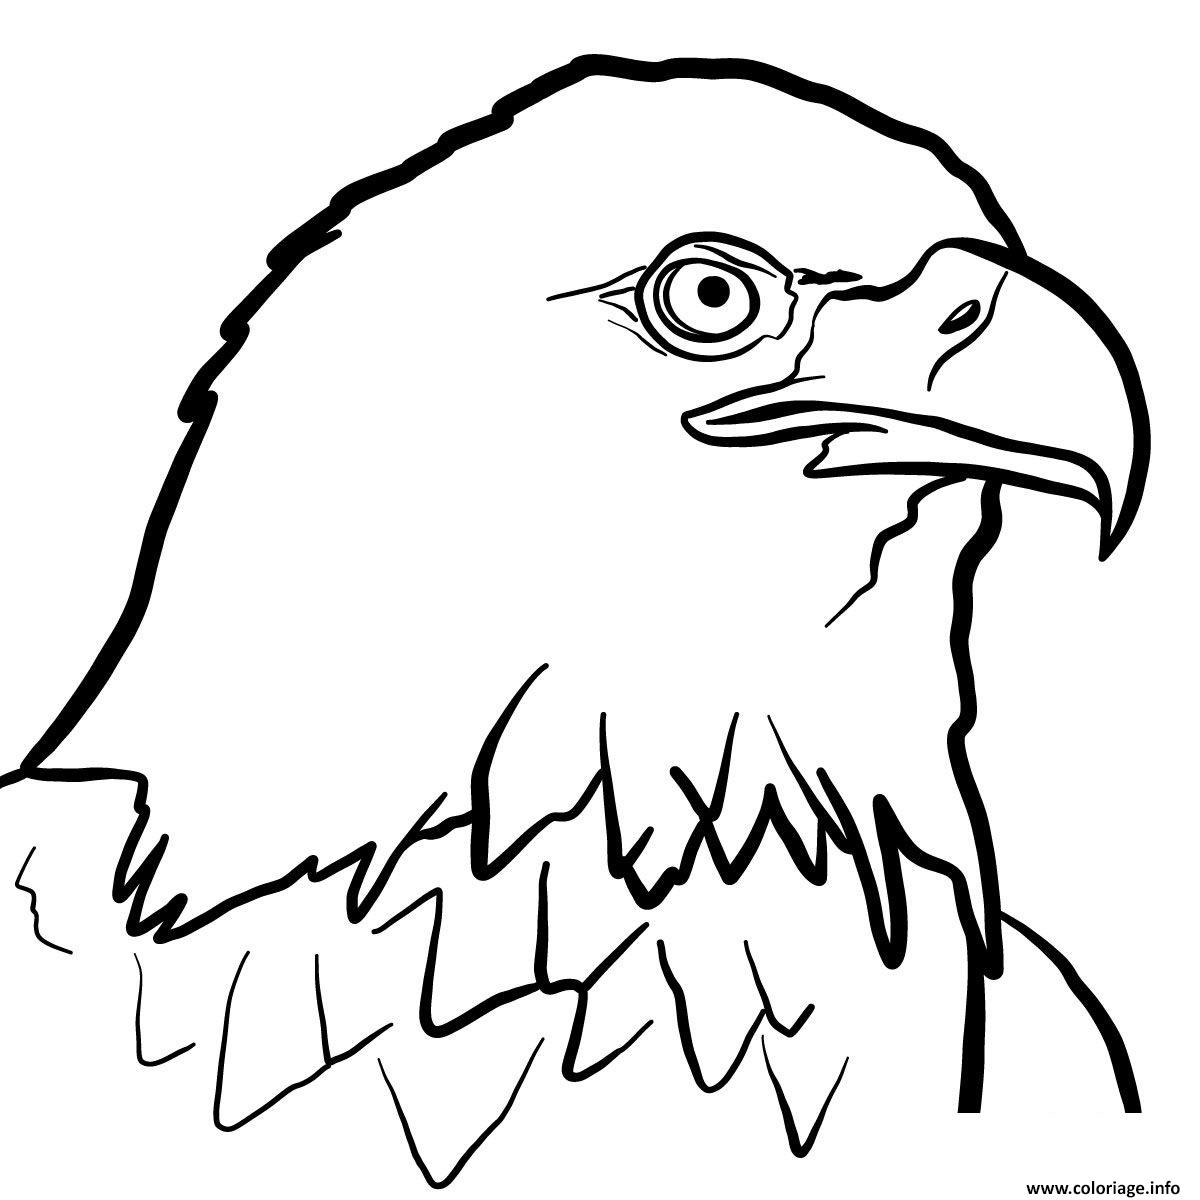 Dessin oiseau aigle royal Coloriage Gratuit à Imprimer